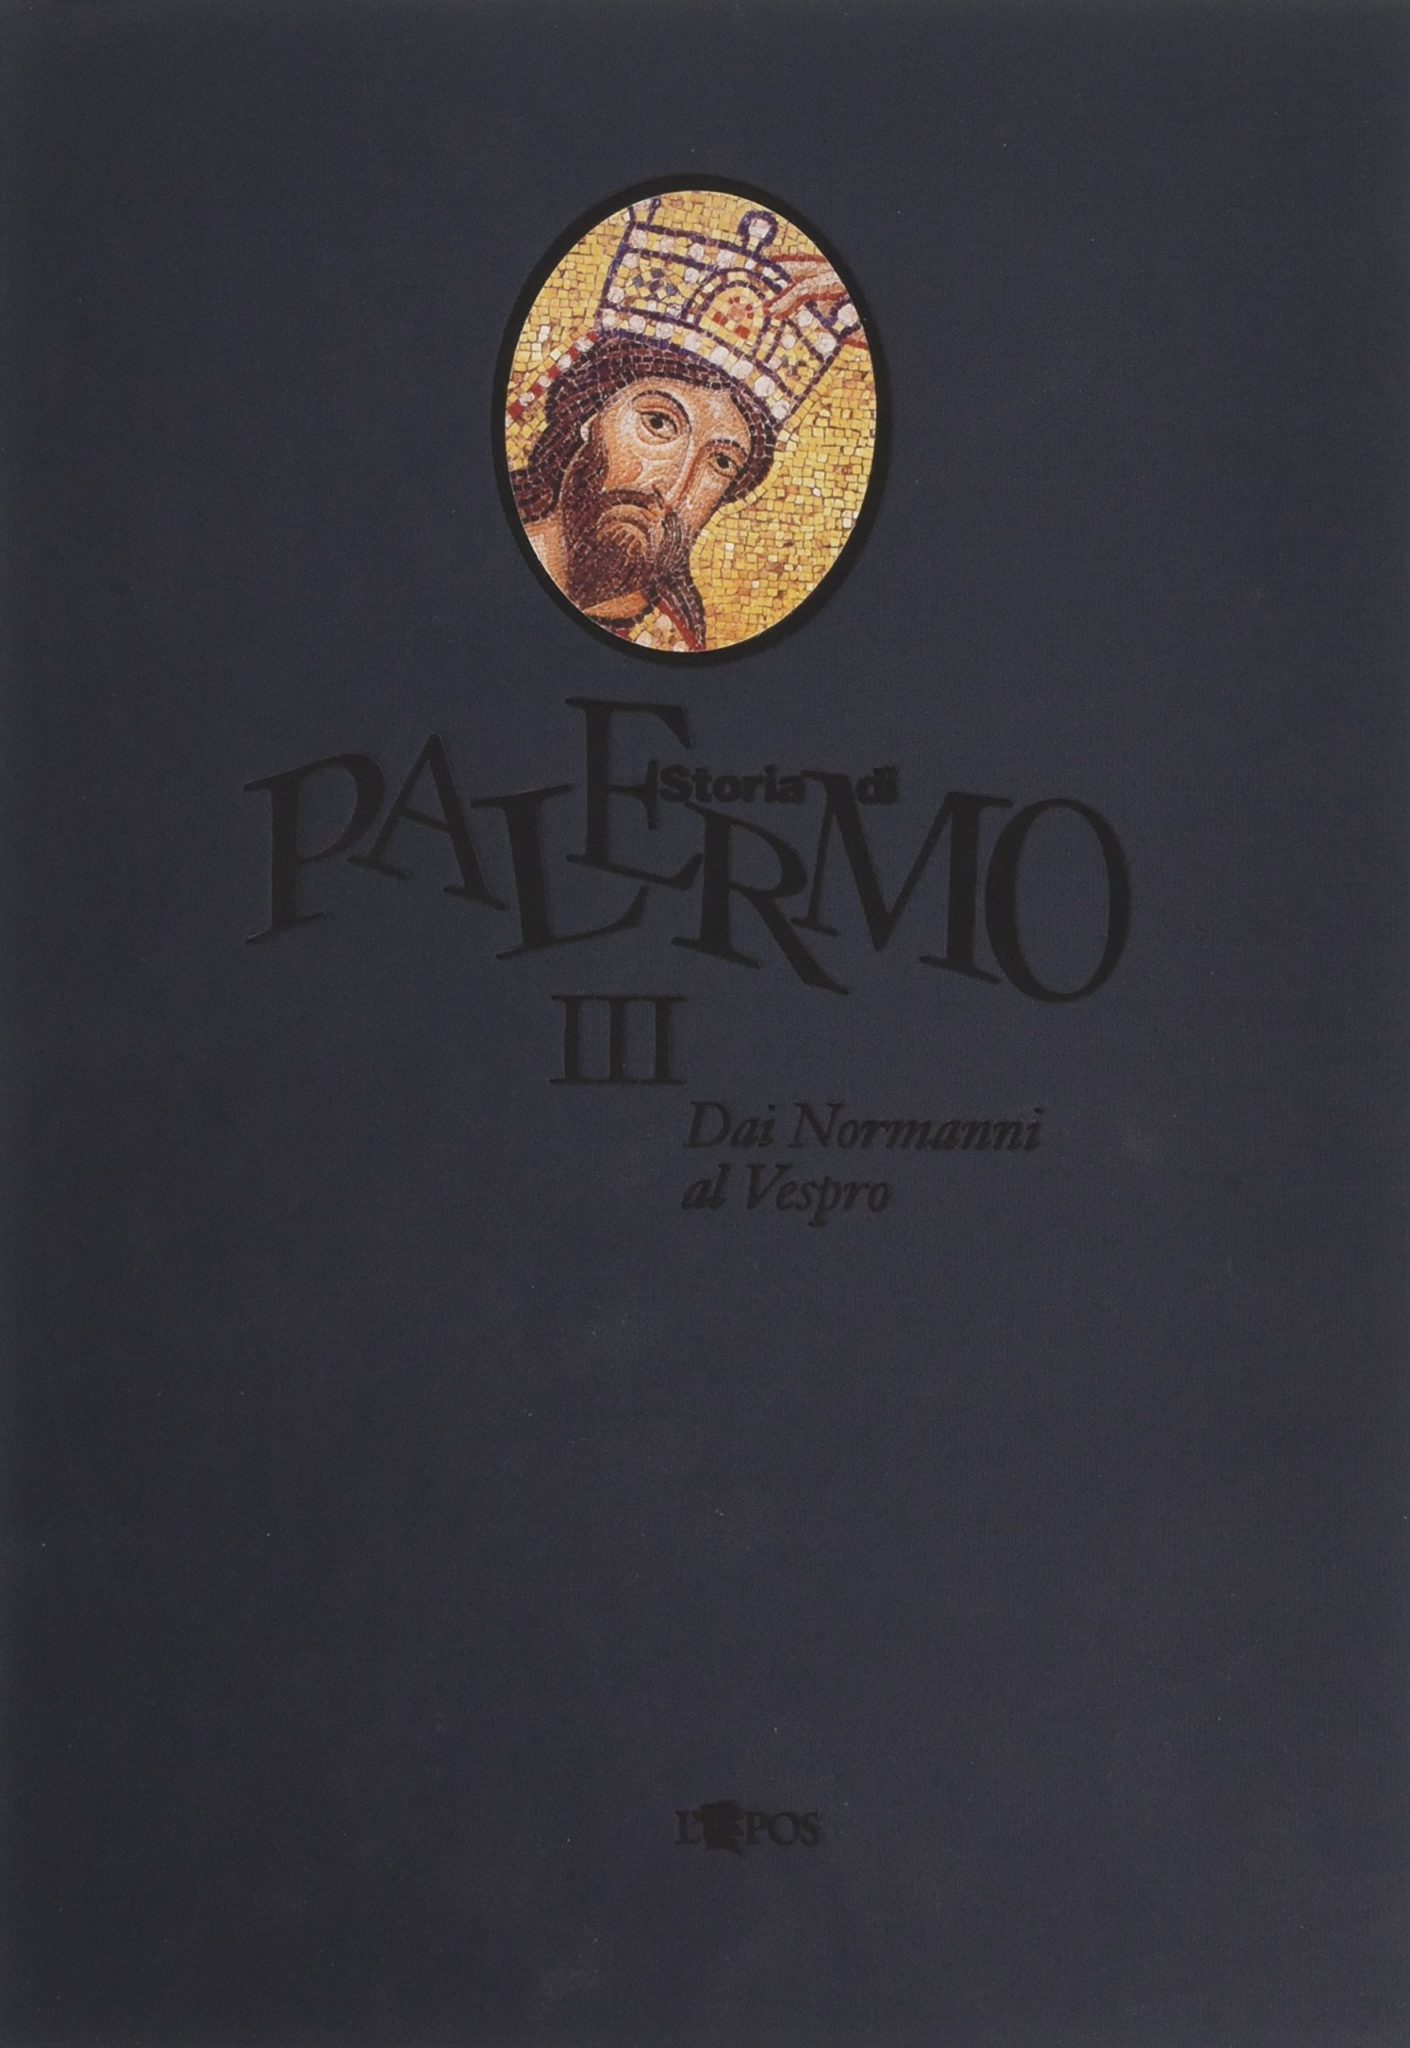 Palermo III